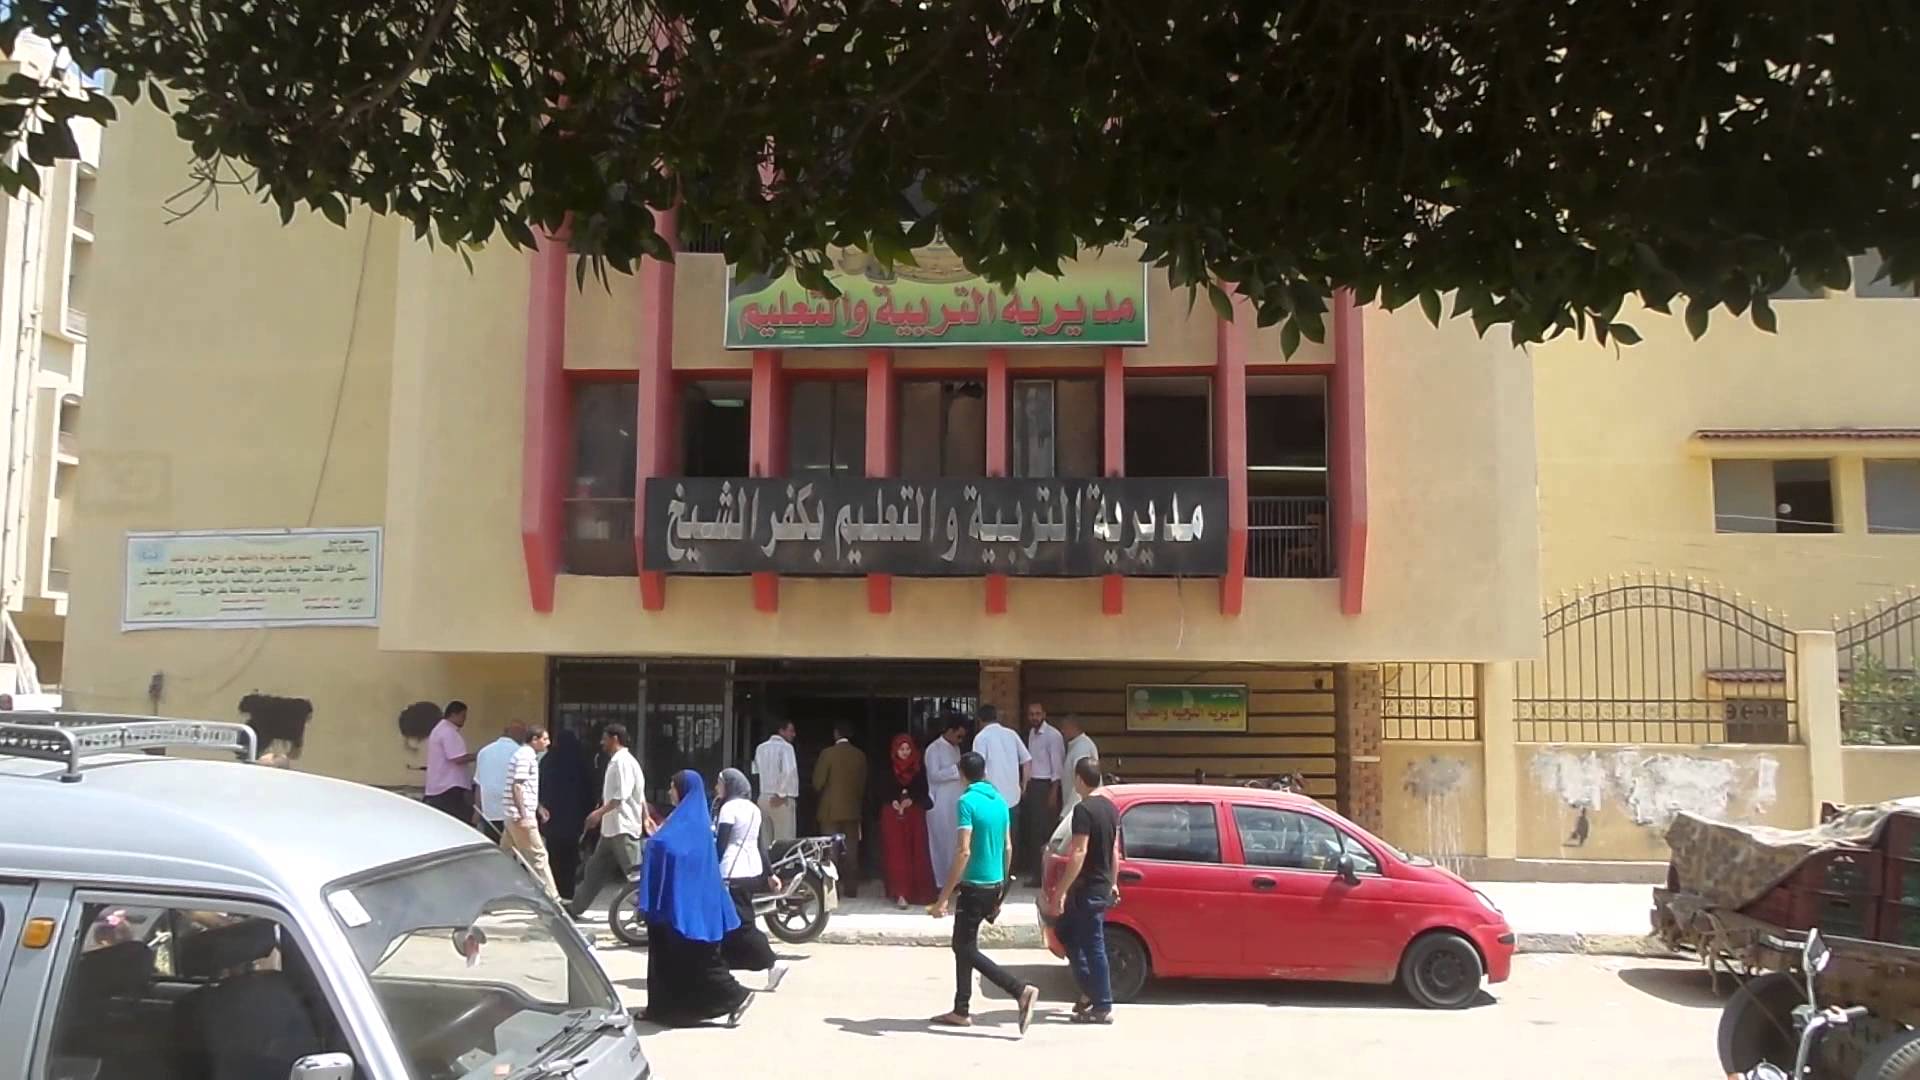   تعليم كفر الشيخ تنفى إجبار مدير مدرسة على تسوية «معاش مبكر»